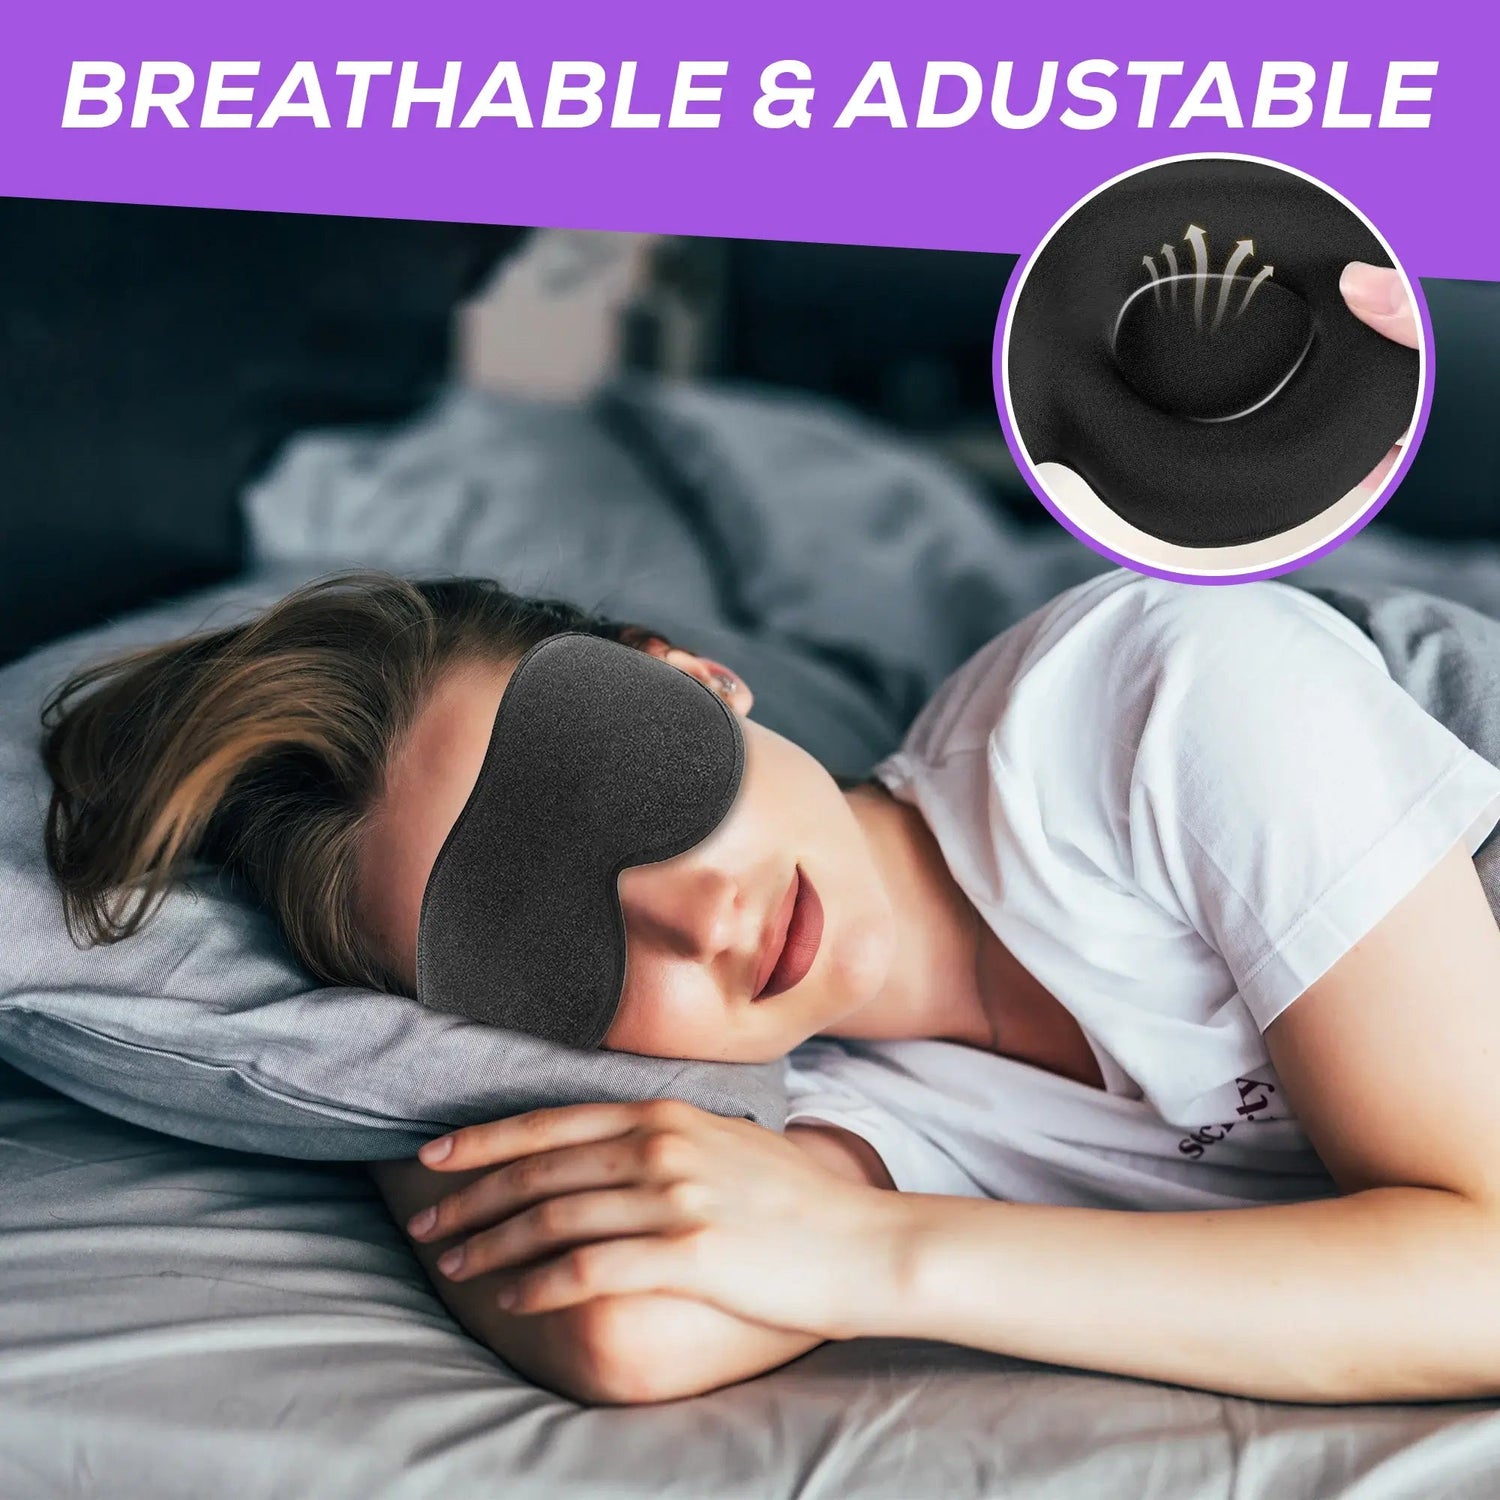 Sleep Eye Mask - BreatheFix